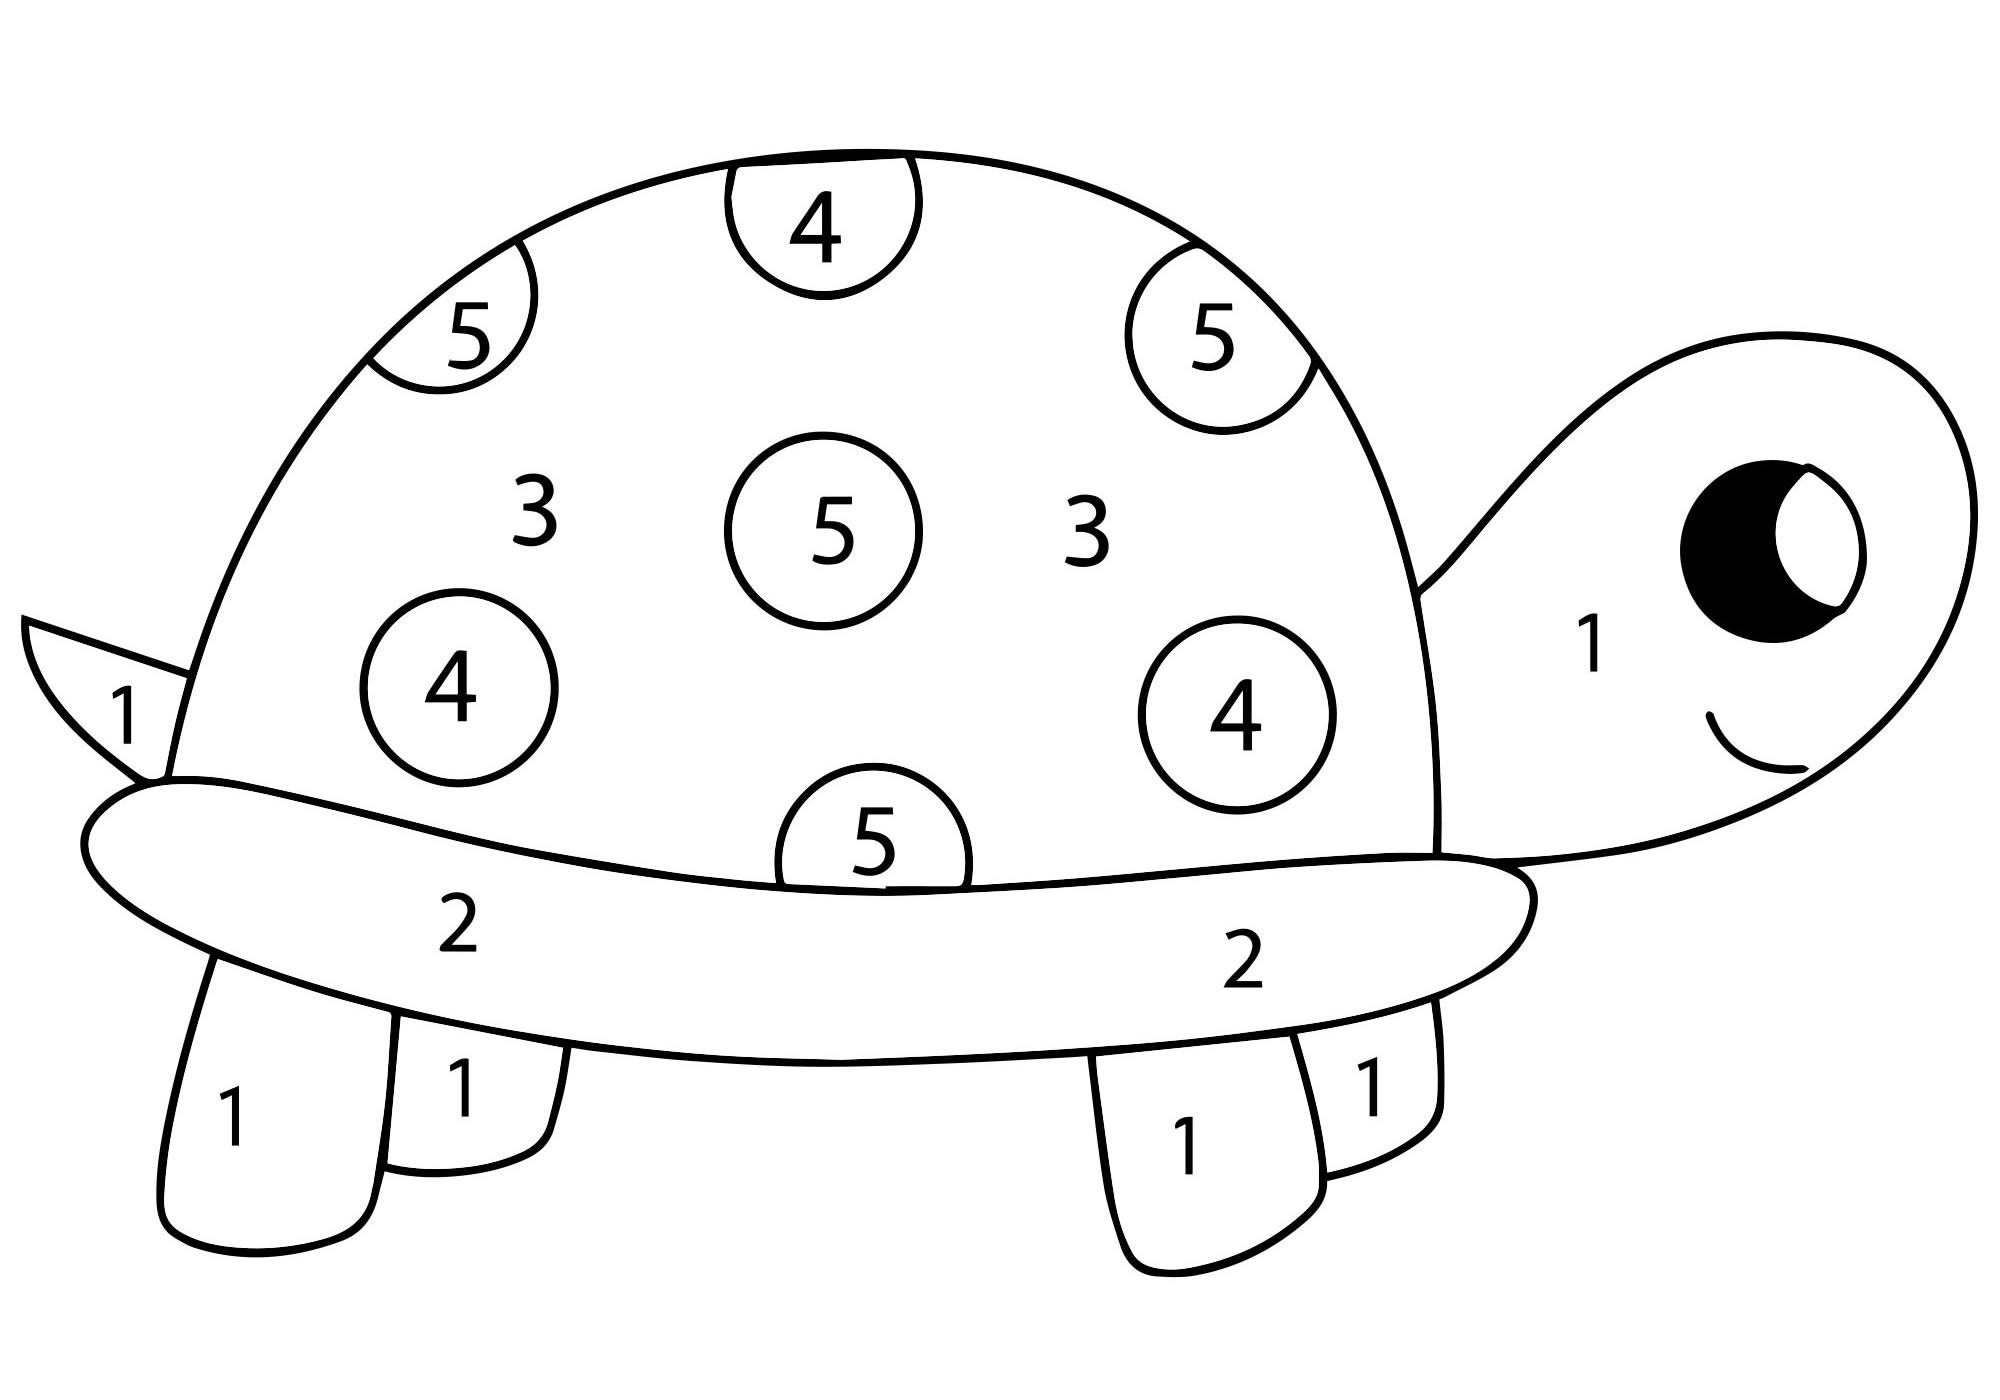 Черепаха по цифрам раскраска для детей